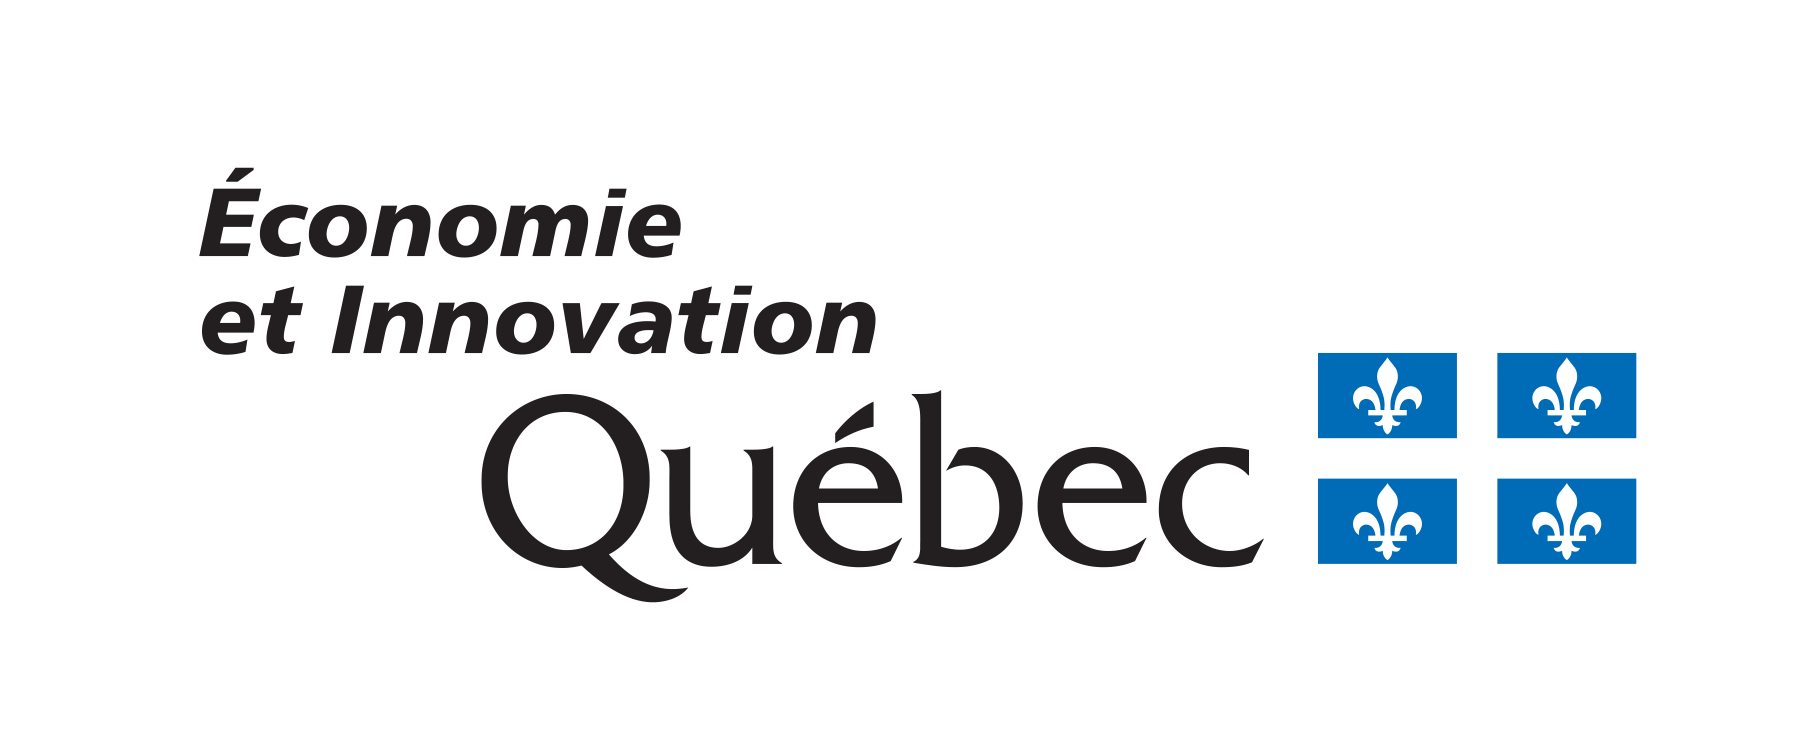 Ministère de l'Écononomie et innovation du Québec